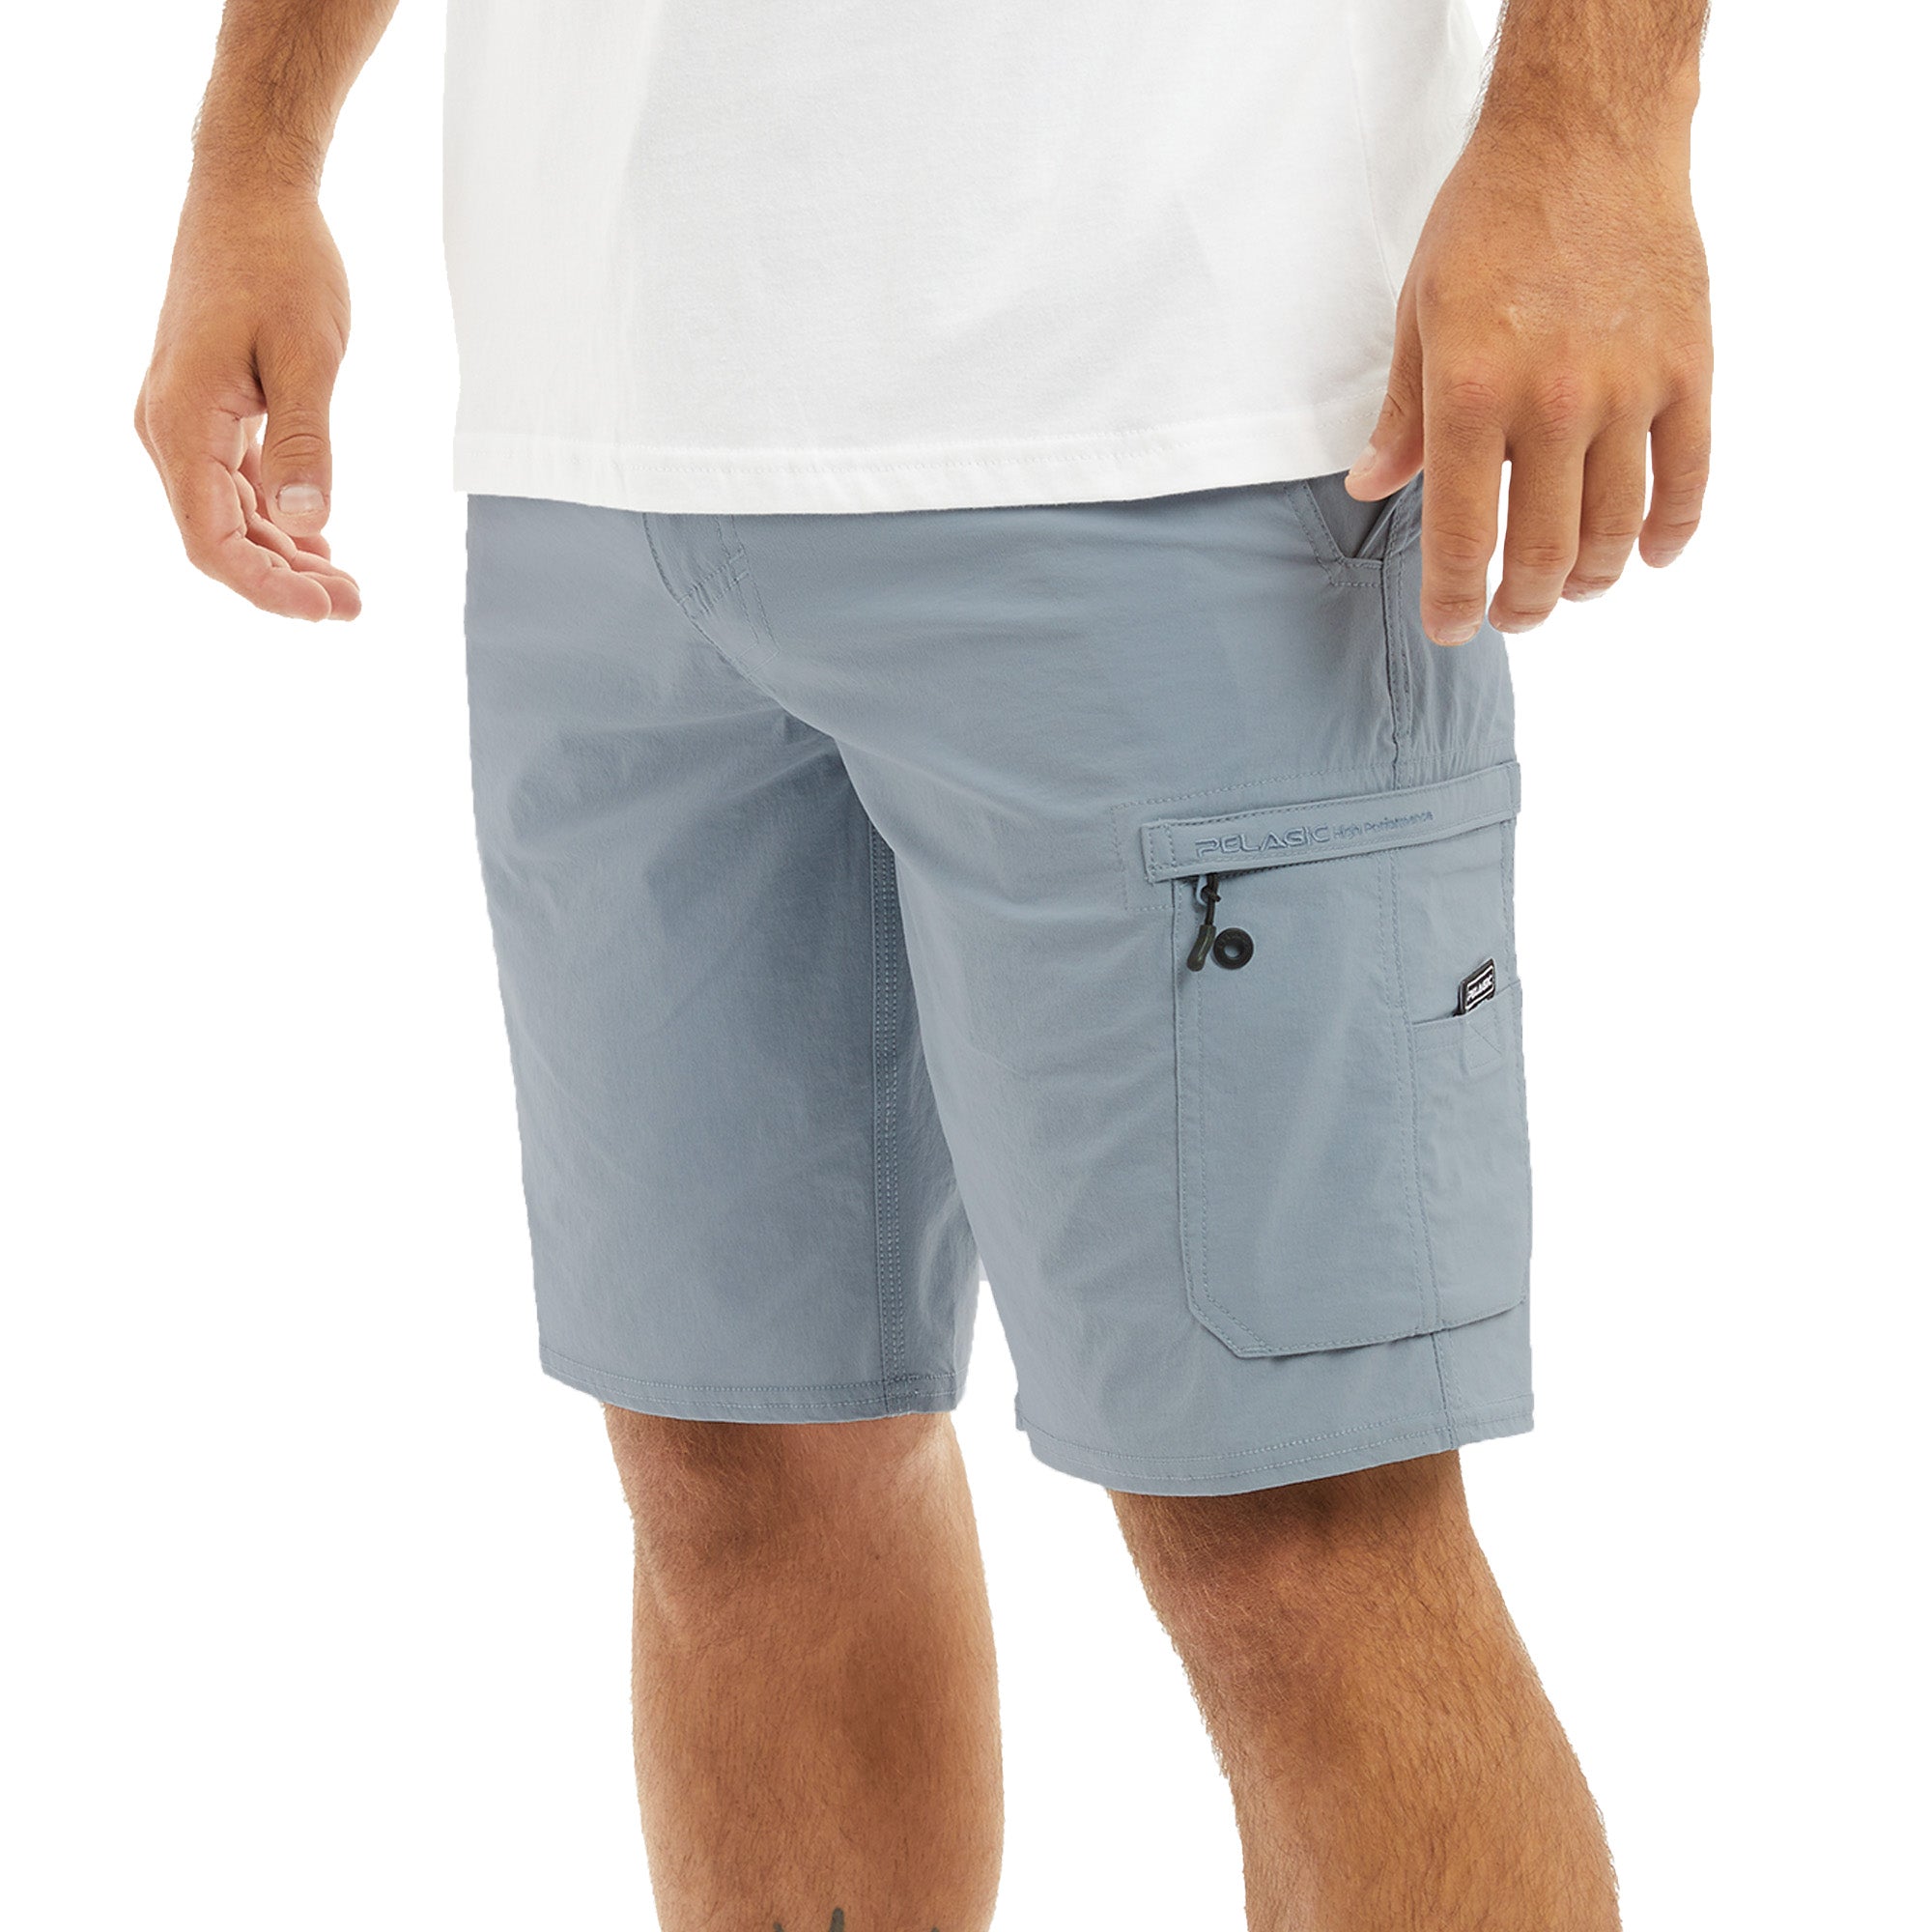 Pelagic Traverse Fishing Shorts for Men